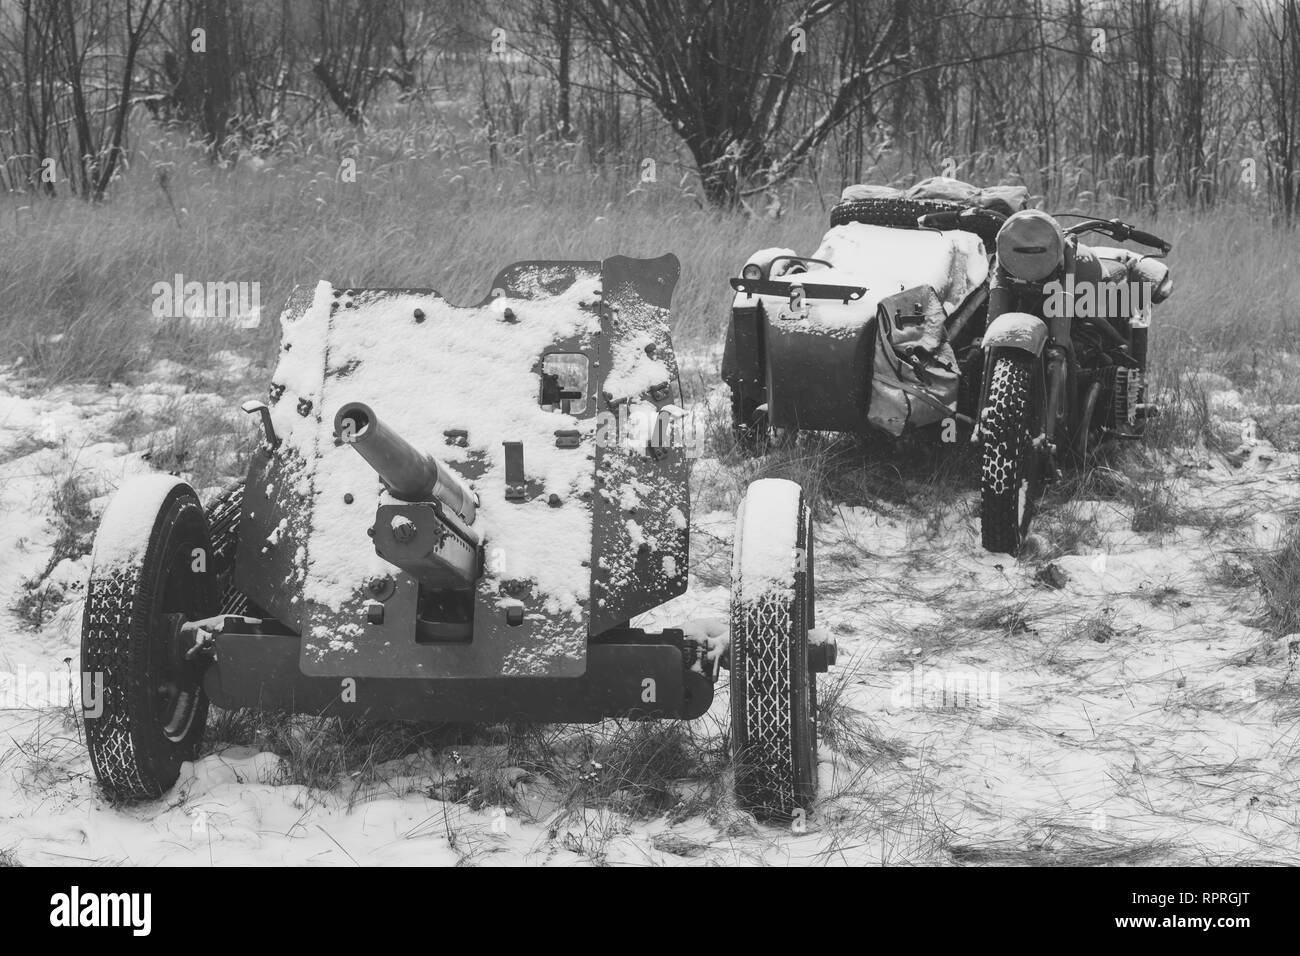 Soviétique russe 45mm anti-char et vieux Tricar, moto à trois roues. Arme anti-char principal de l'Armée rouge pendant la Seconde Guerre mondiale, des unités d'artillerie WW II Banque D'Images